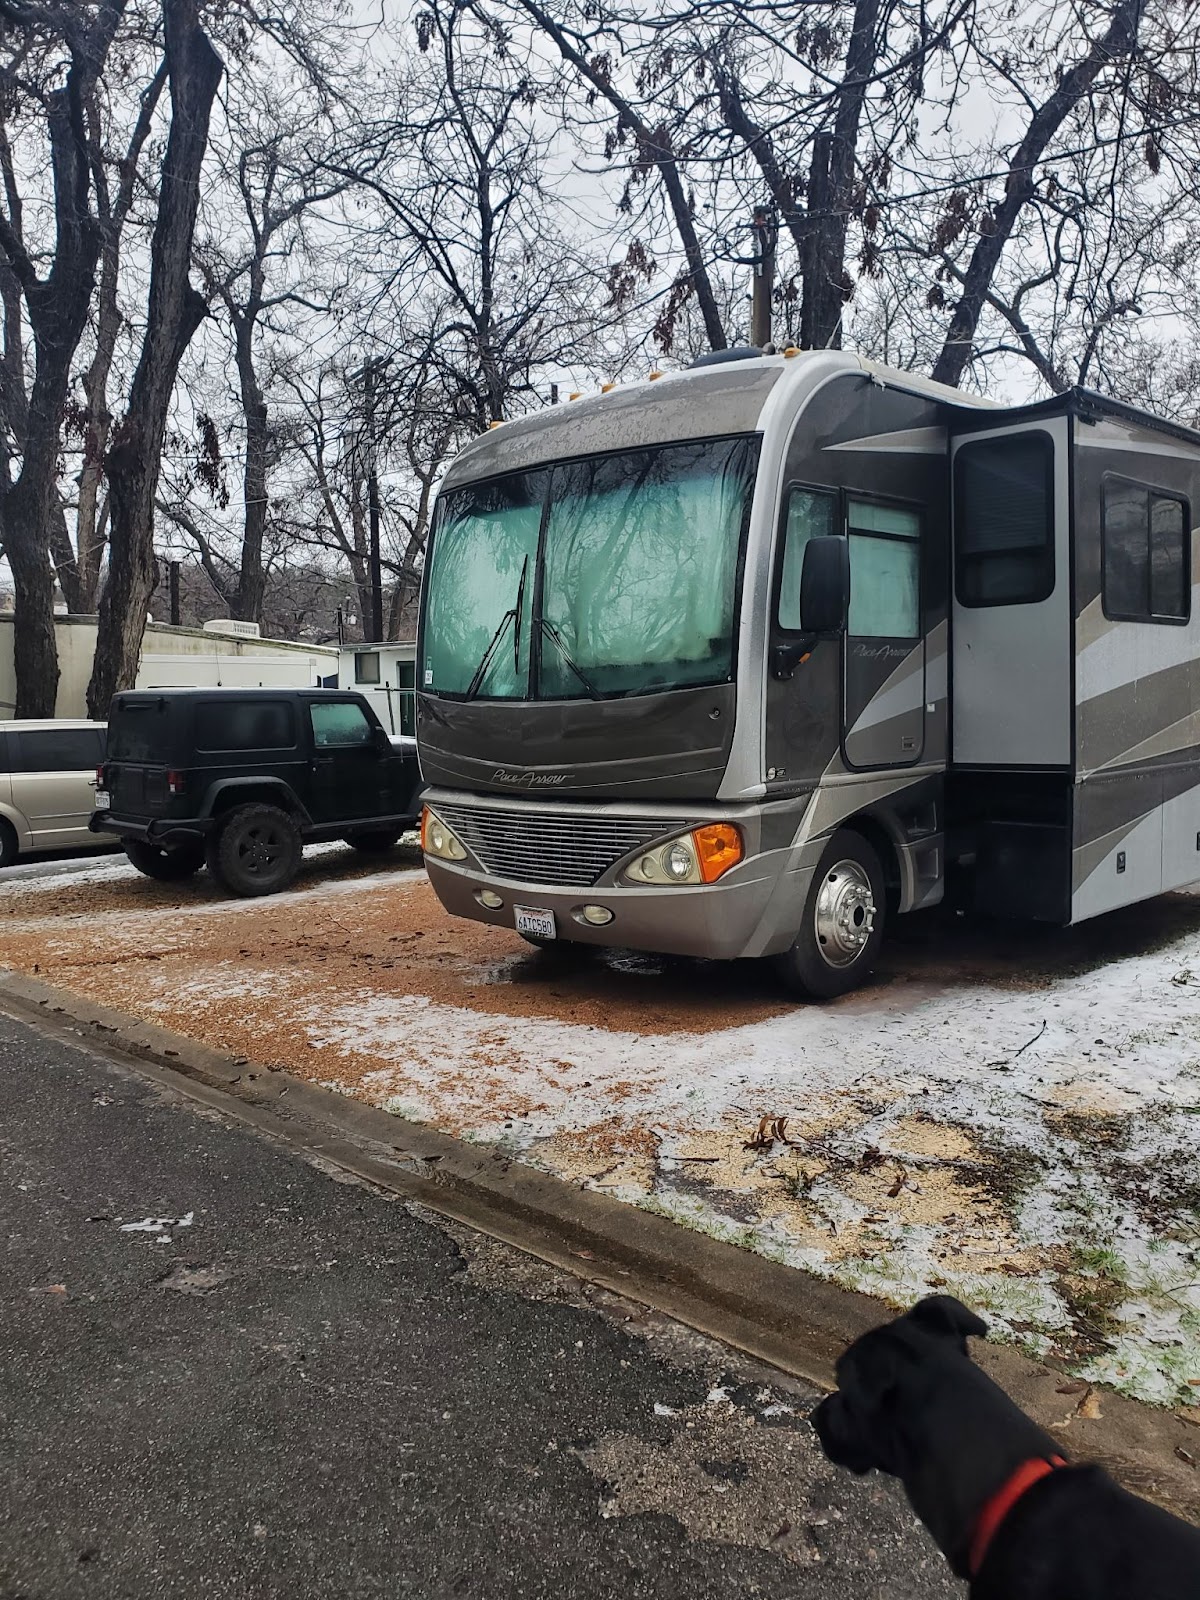 Ein großes Wohnmobil, das auf einem verschneiten Parkplatz geparkt ist, mit einem großen schwarzen Hund in der unteren rechten Ecke.